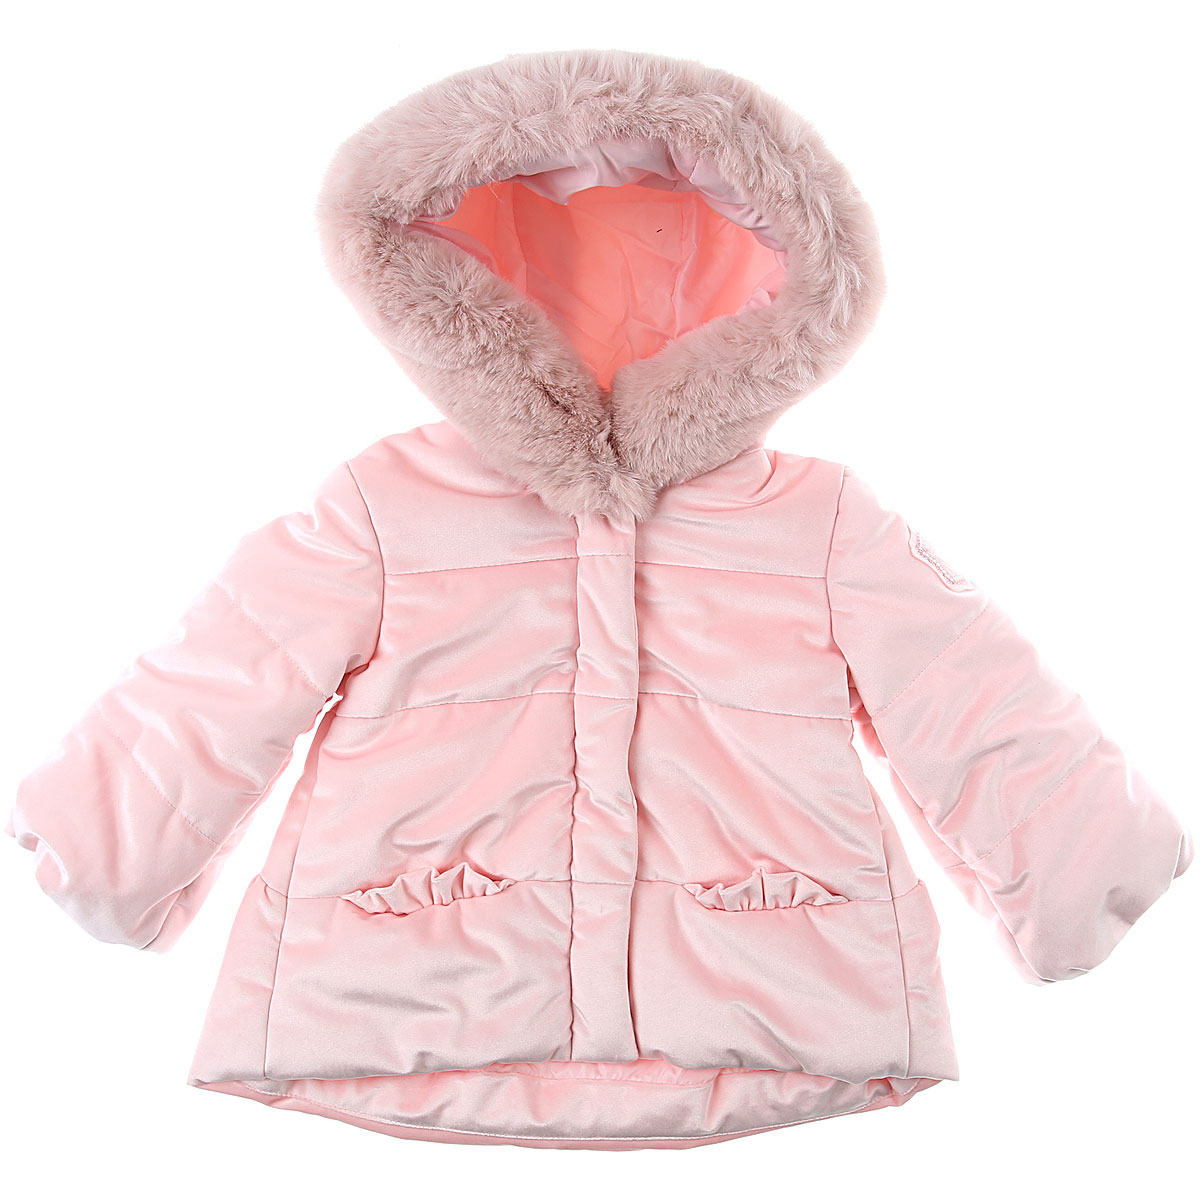 Monnalisa Baby Daunen Jacke für Mädchen Günstig im Sale, Pink, Polyester, 2017, 12M 2Y 9M